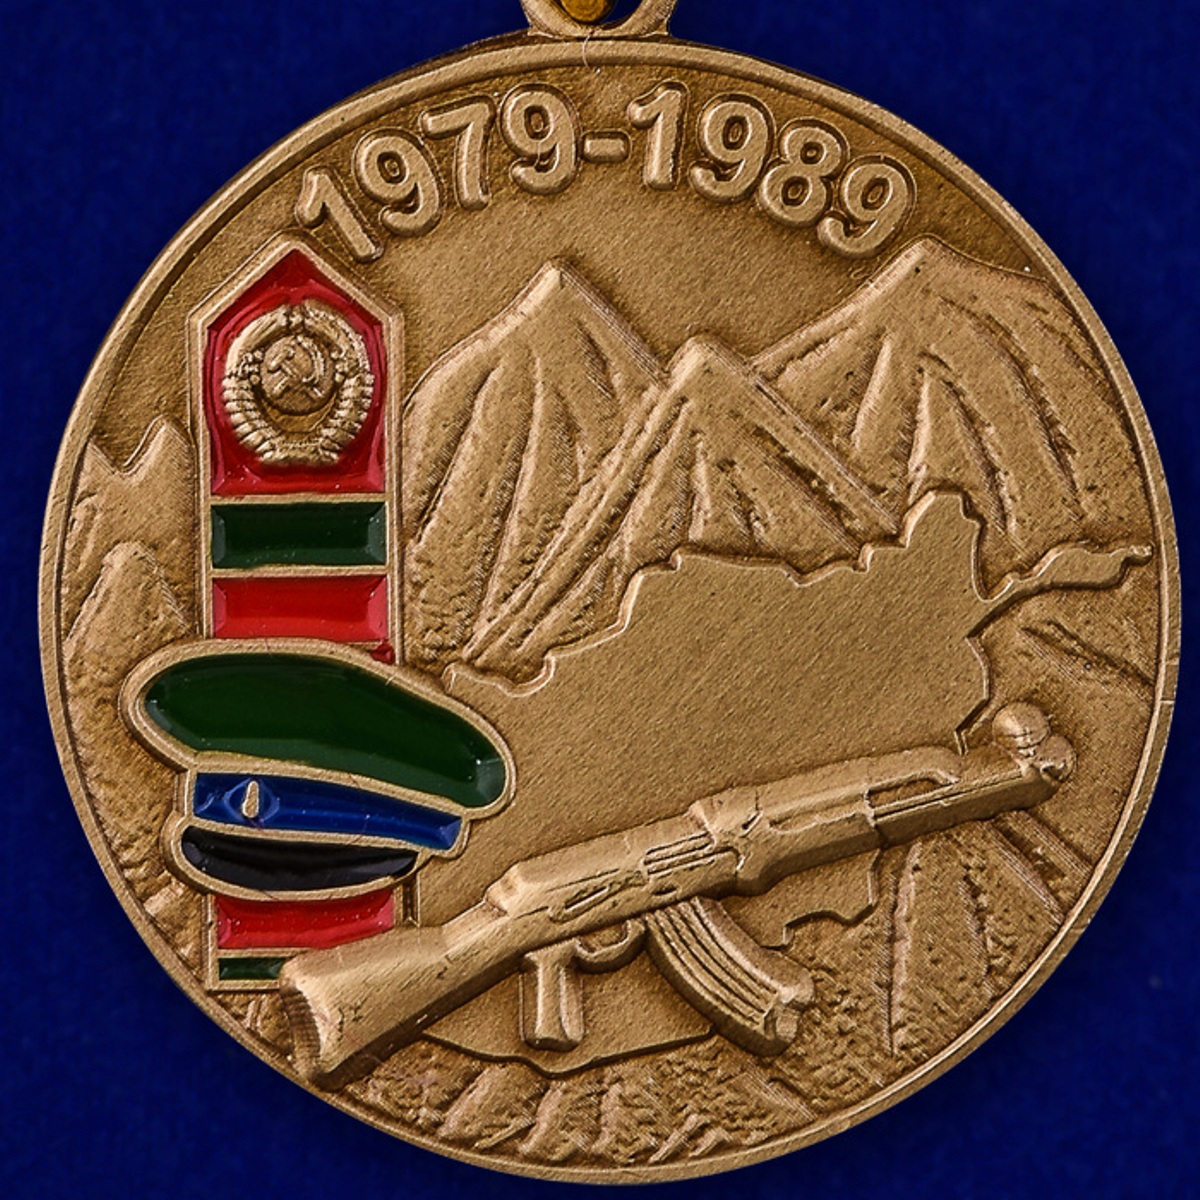 Памятная медаль "Воину-пограничнику, участнику Афганской войны" 